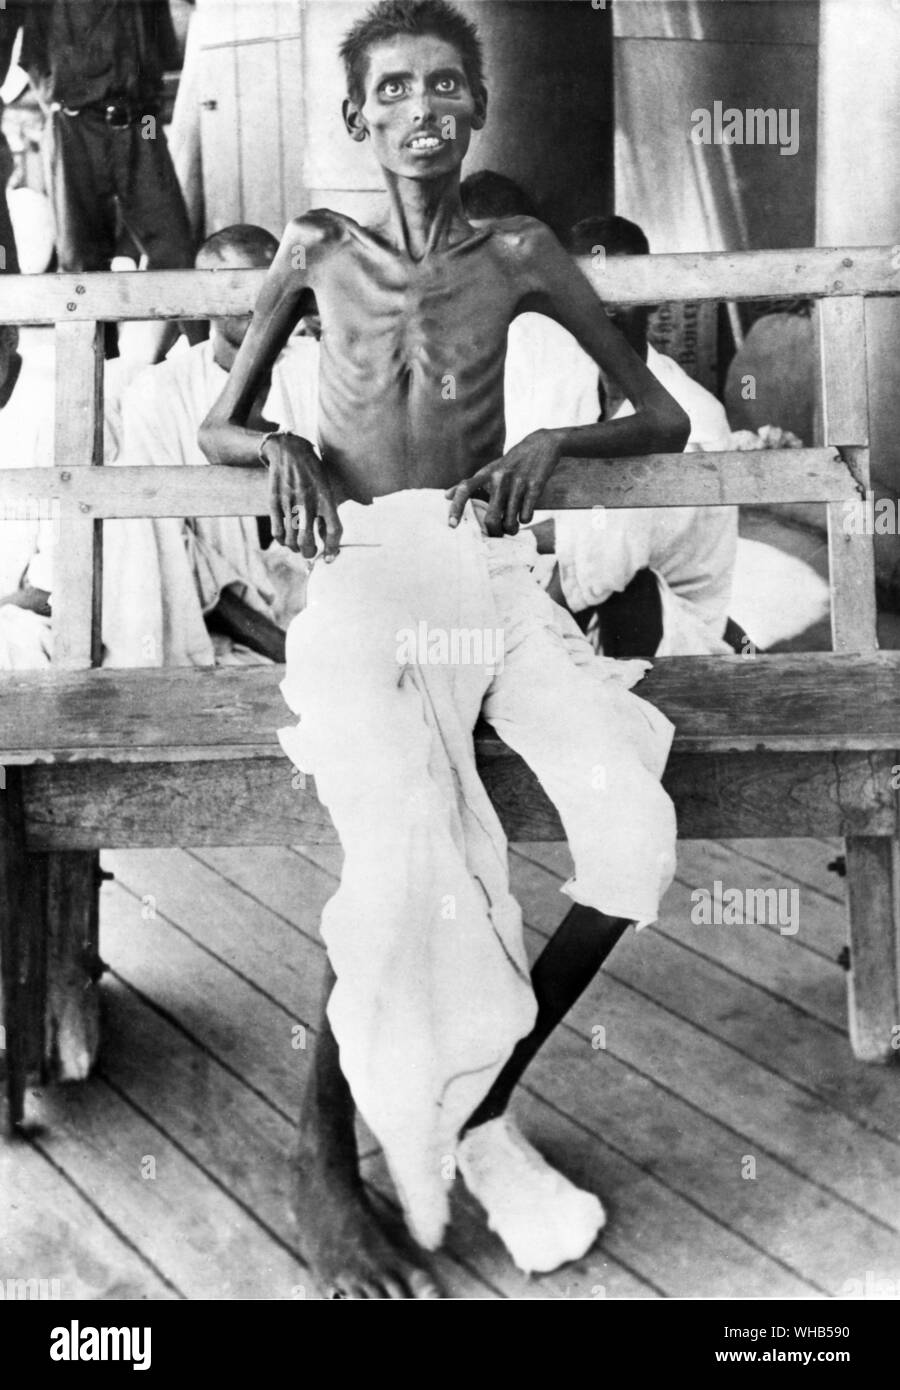 Un soldado indio capturado en Kut tras la liberación en virtud de un canje de prisioneros, que muestran los efectos de la malnutrición. Foto de stock